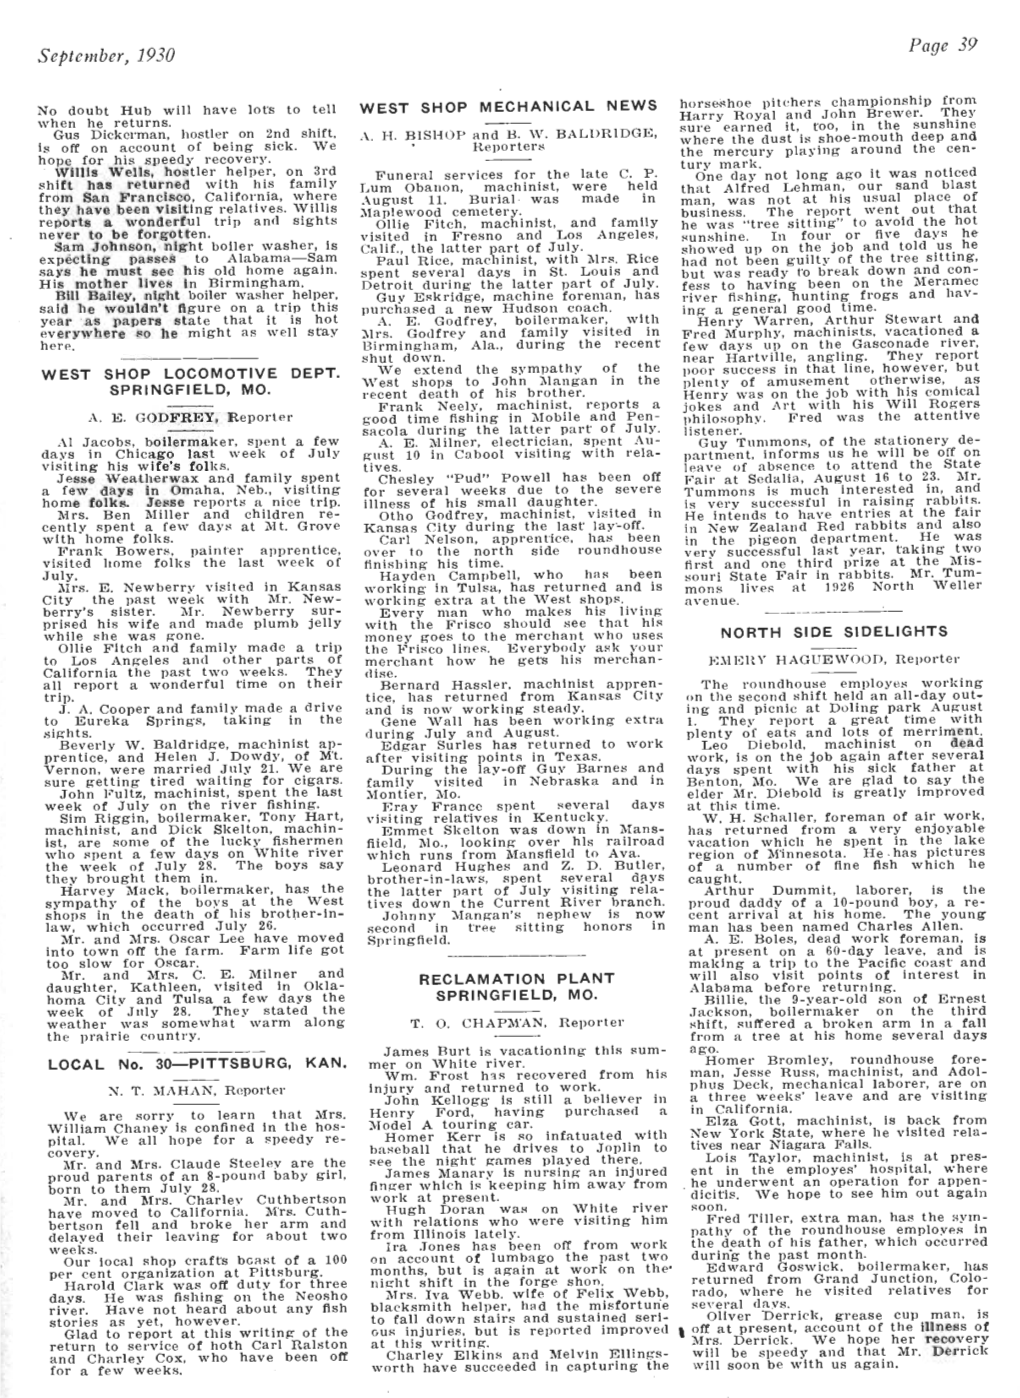 The Frisco Employes' Magazine, September 1930